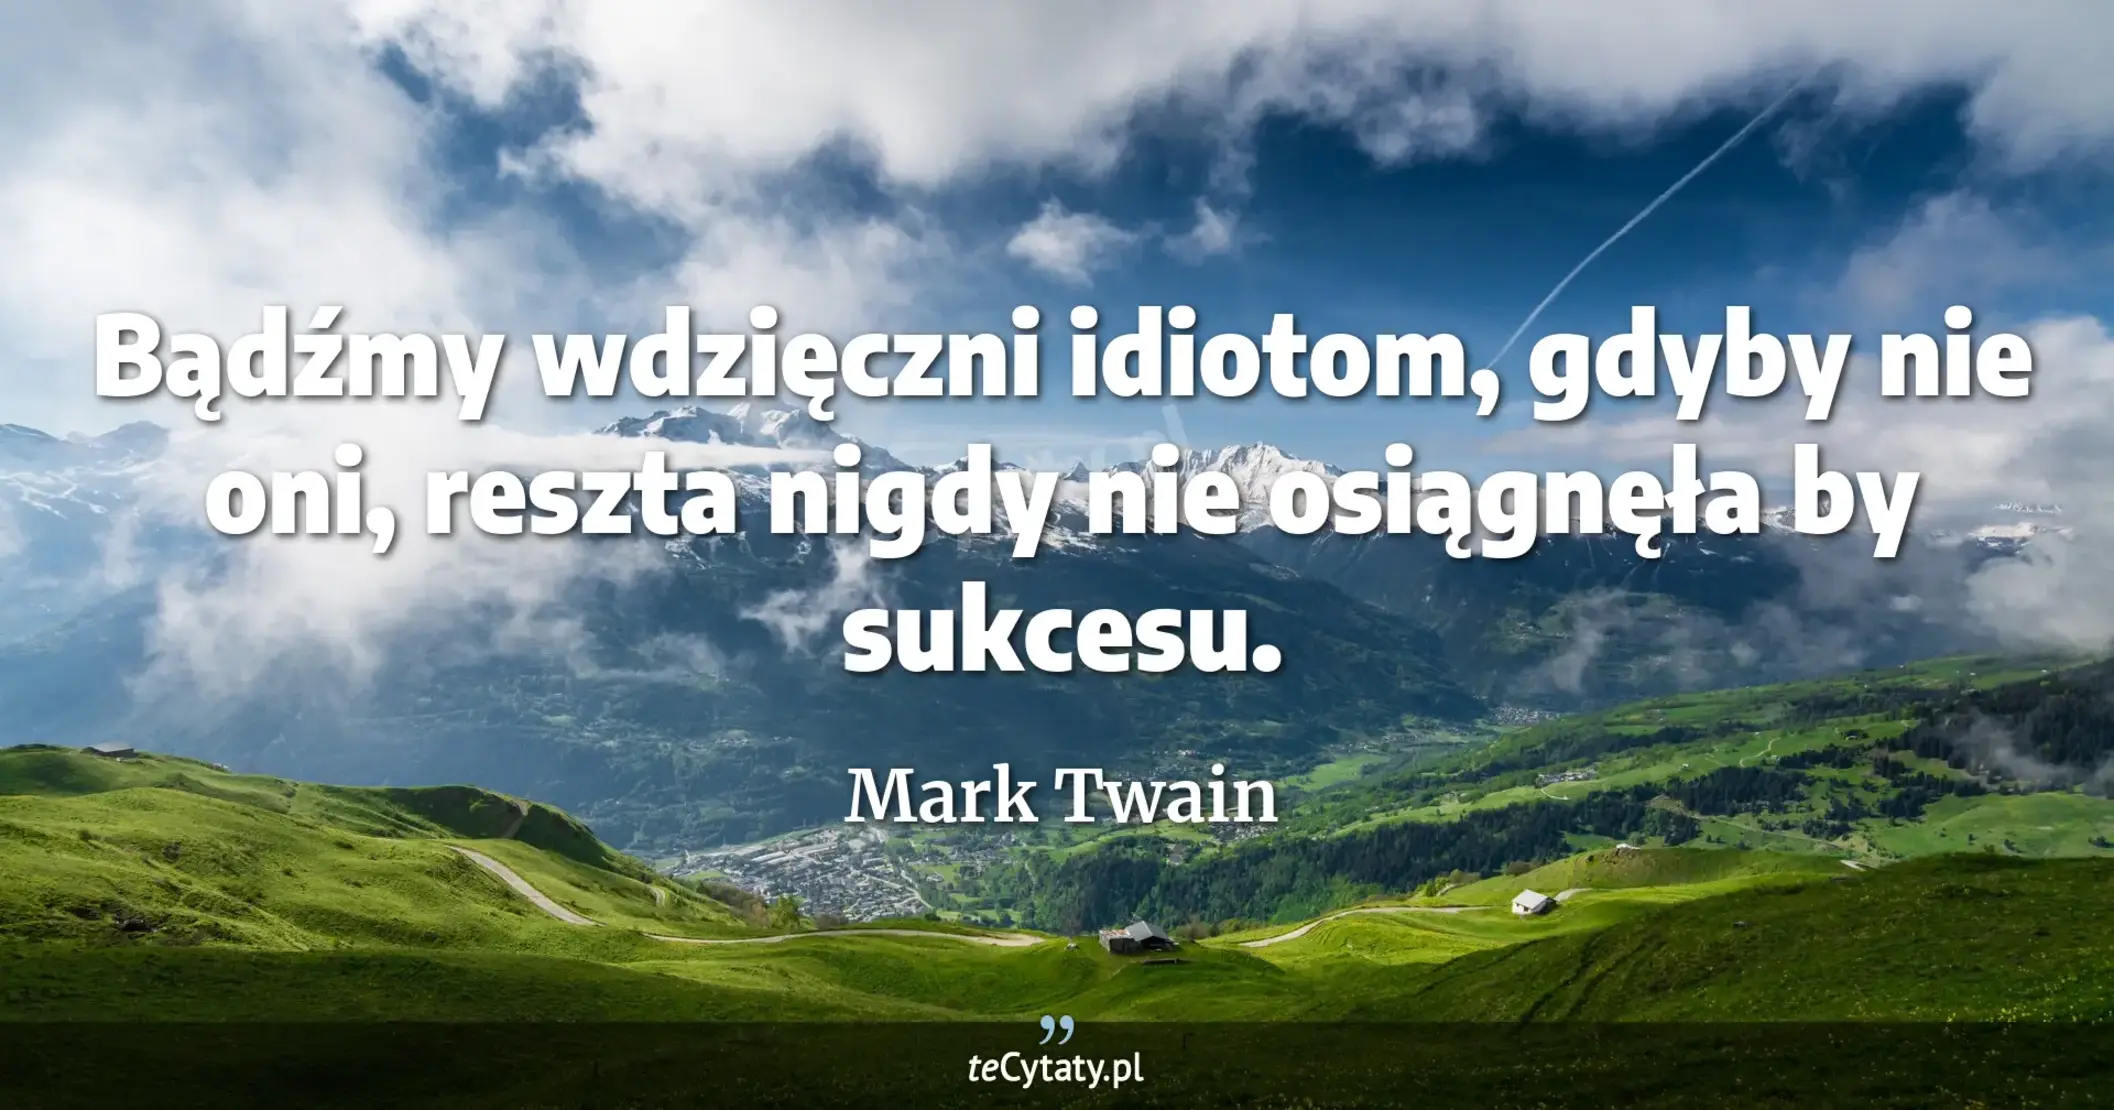 Bądźmy wdzięczni idiotom, gdyby nie oni, reszta nigdy nie osiągnęła by sukcesu. - Mark Twain